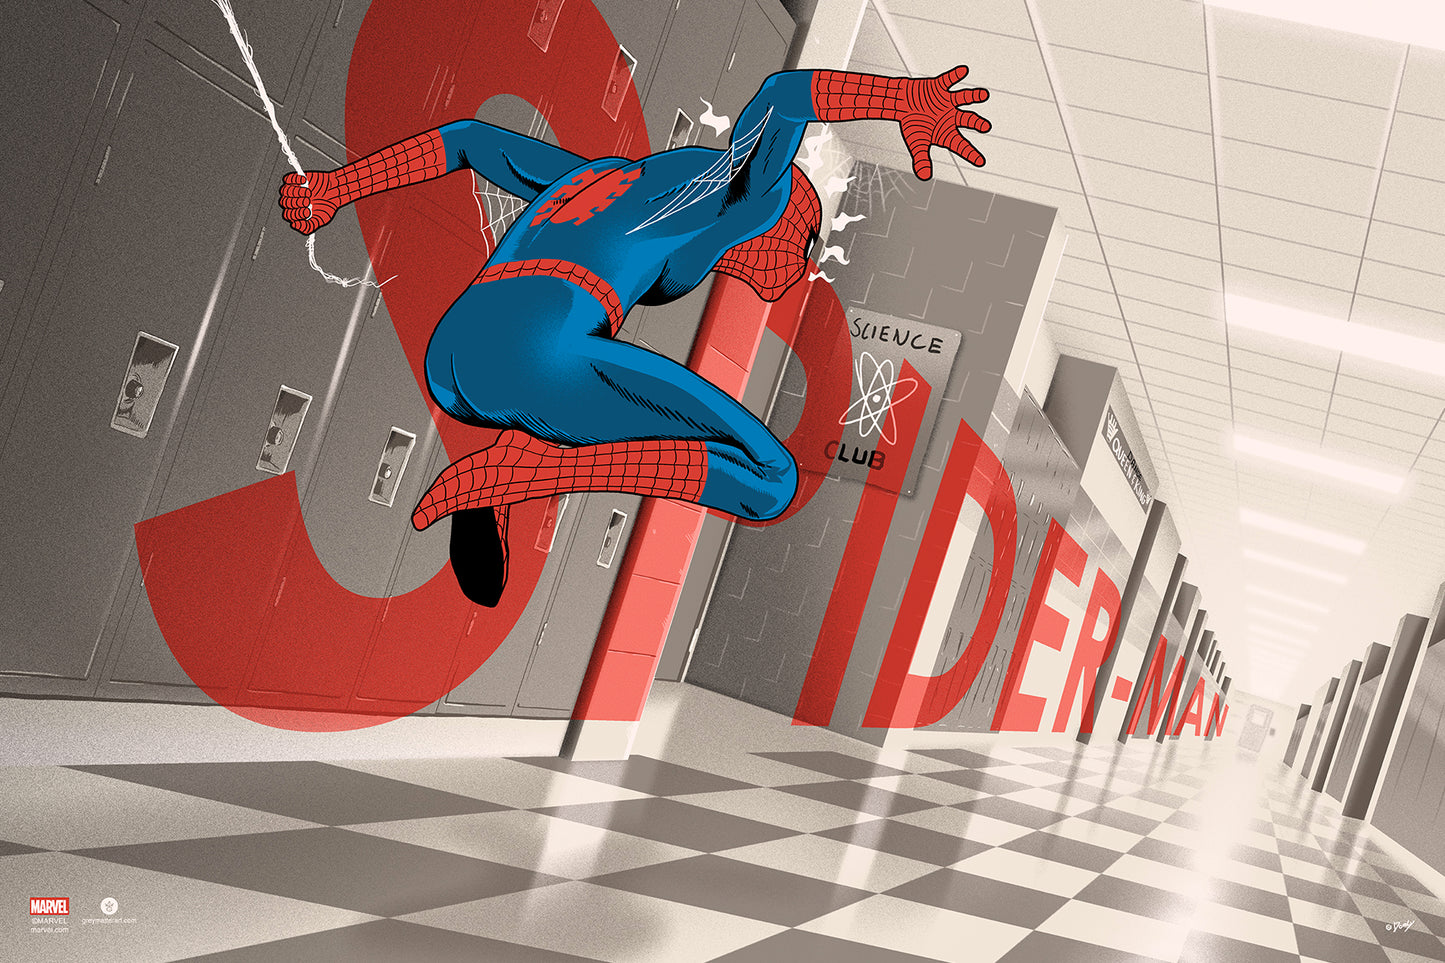 Doaly "Spider-Man"